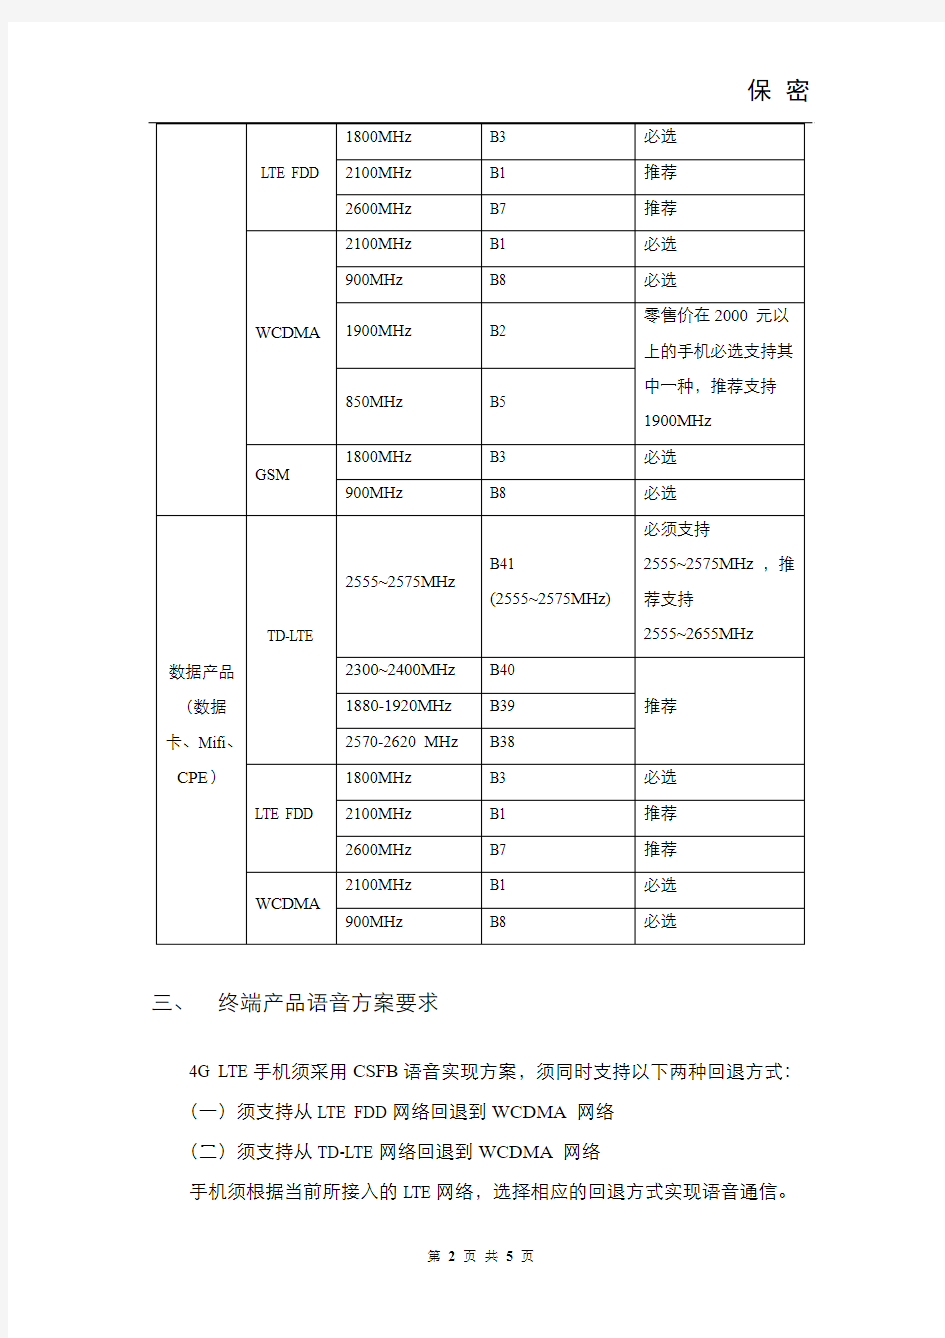 中国联通LTE终端产品白皮书 V2.1